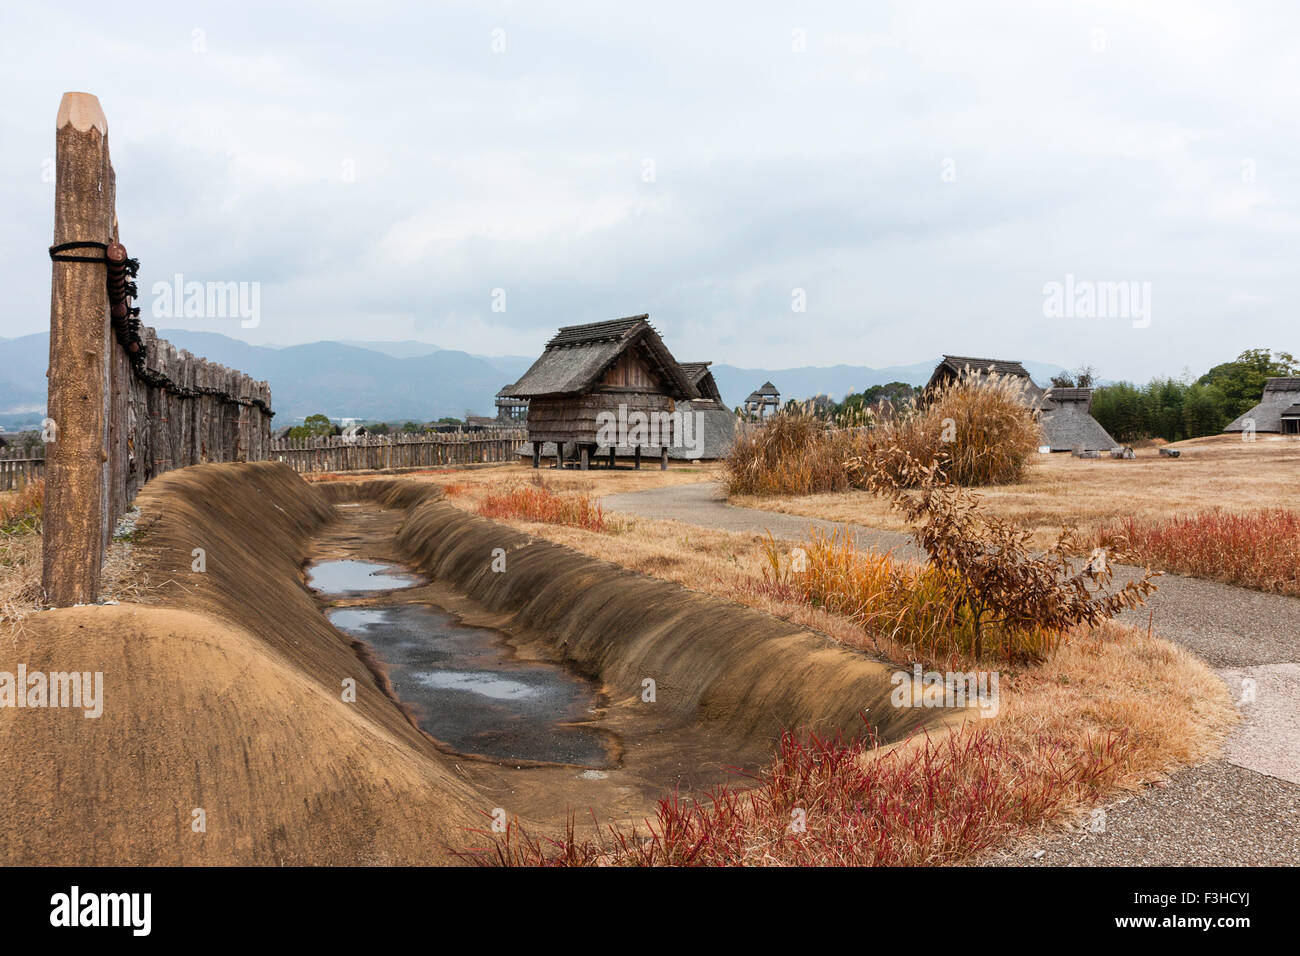 Yoshinogari Park, Japan. Yayoi rekonstruiert Siedlung. Minami no Mura, South Village. Abstellraum und das Dorf vom Eingang mit Wassergraben und Holzzaun. Stockfoto